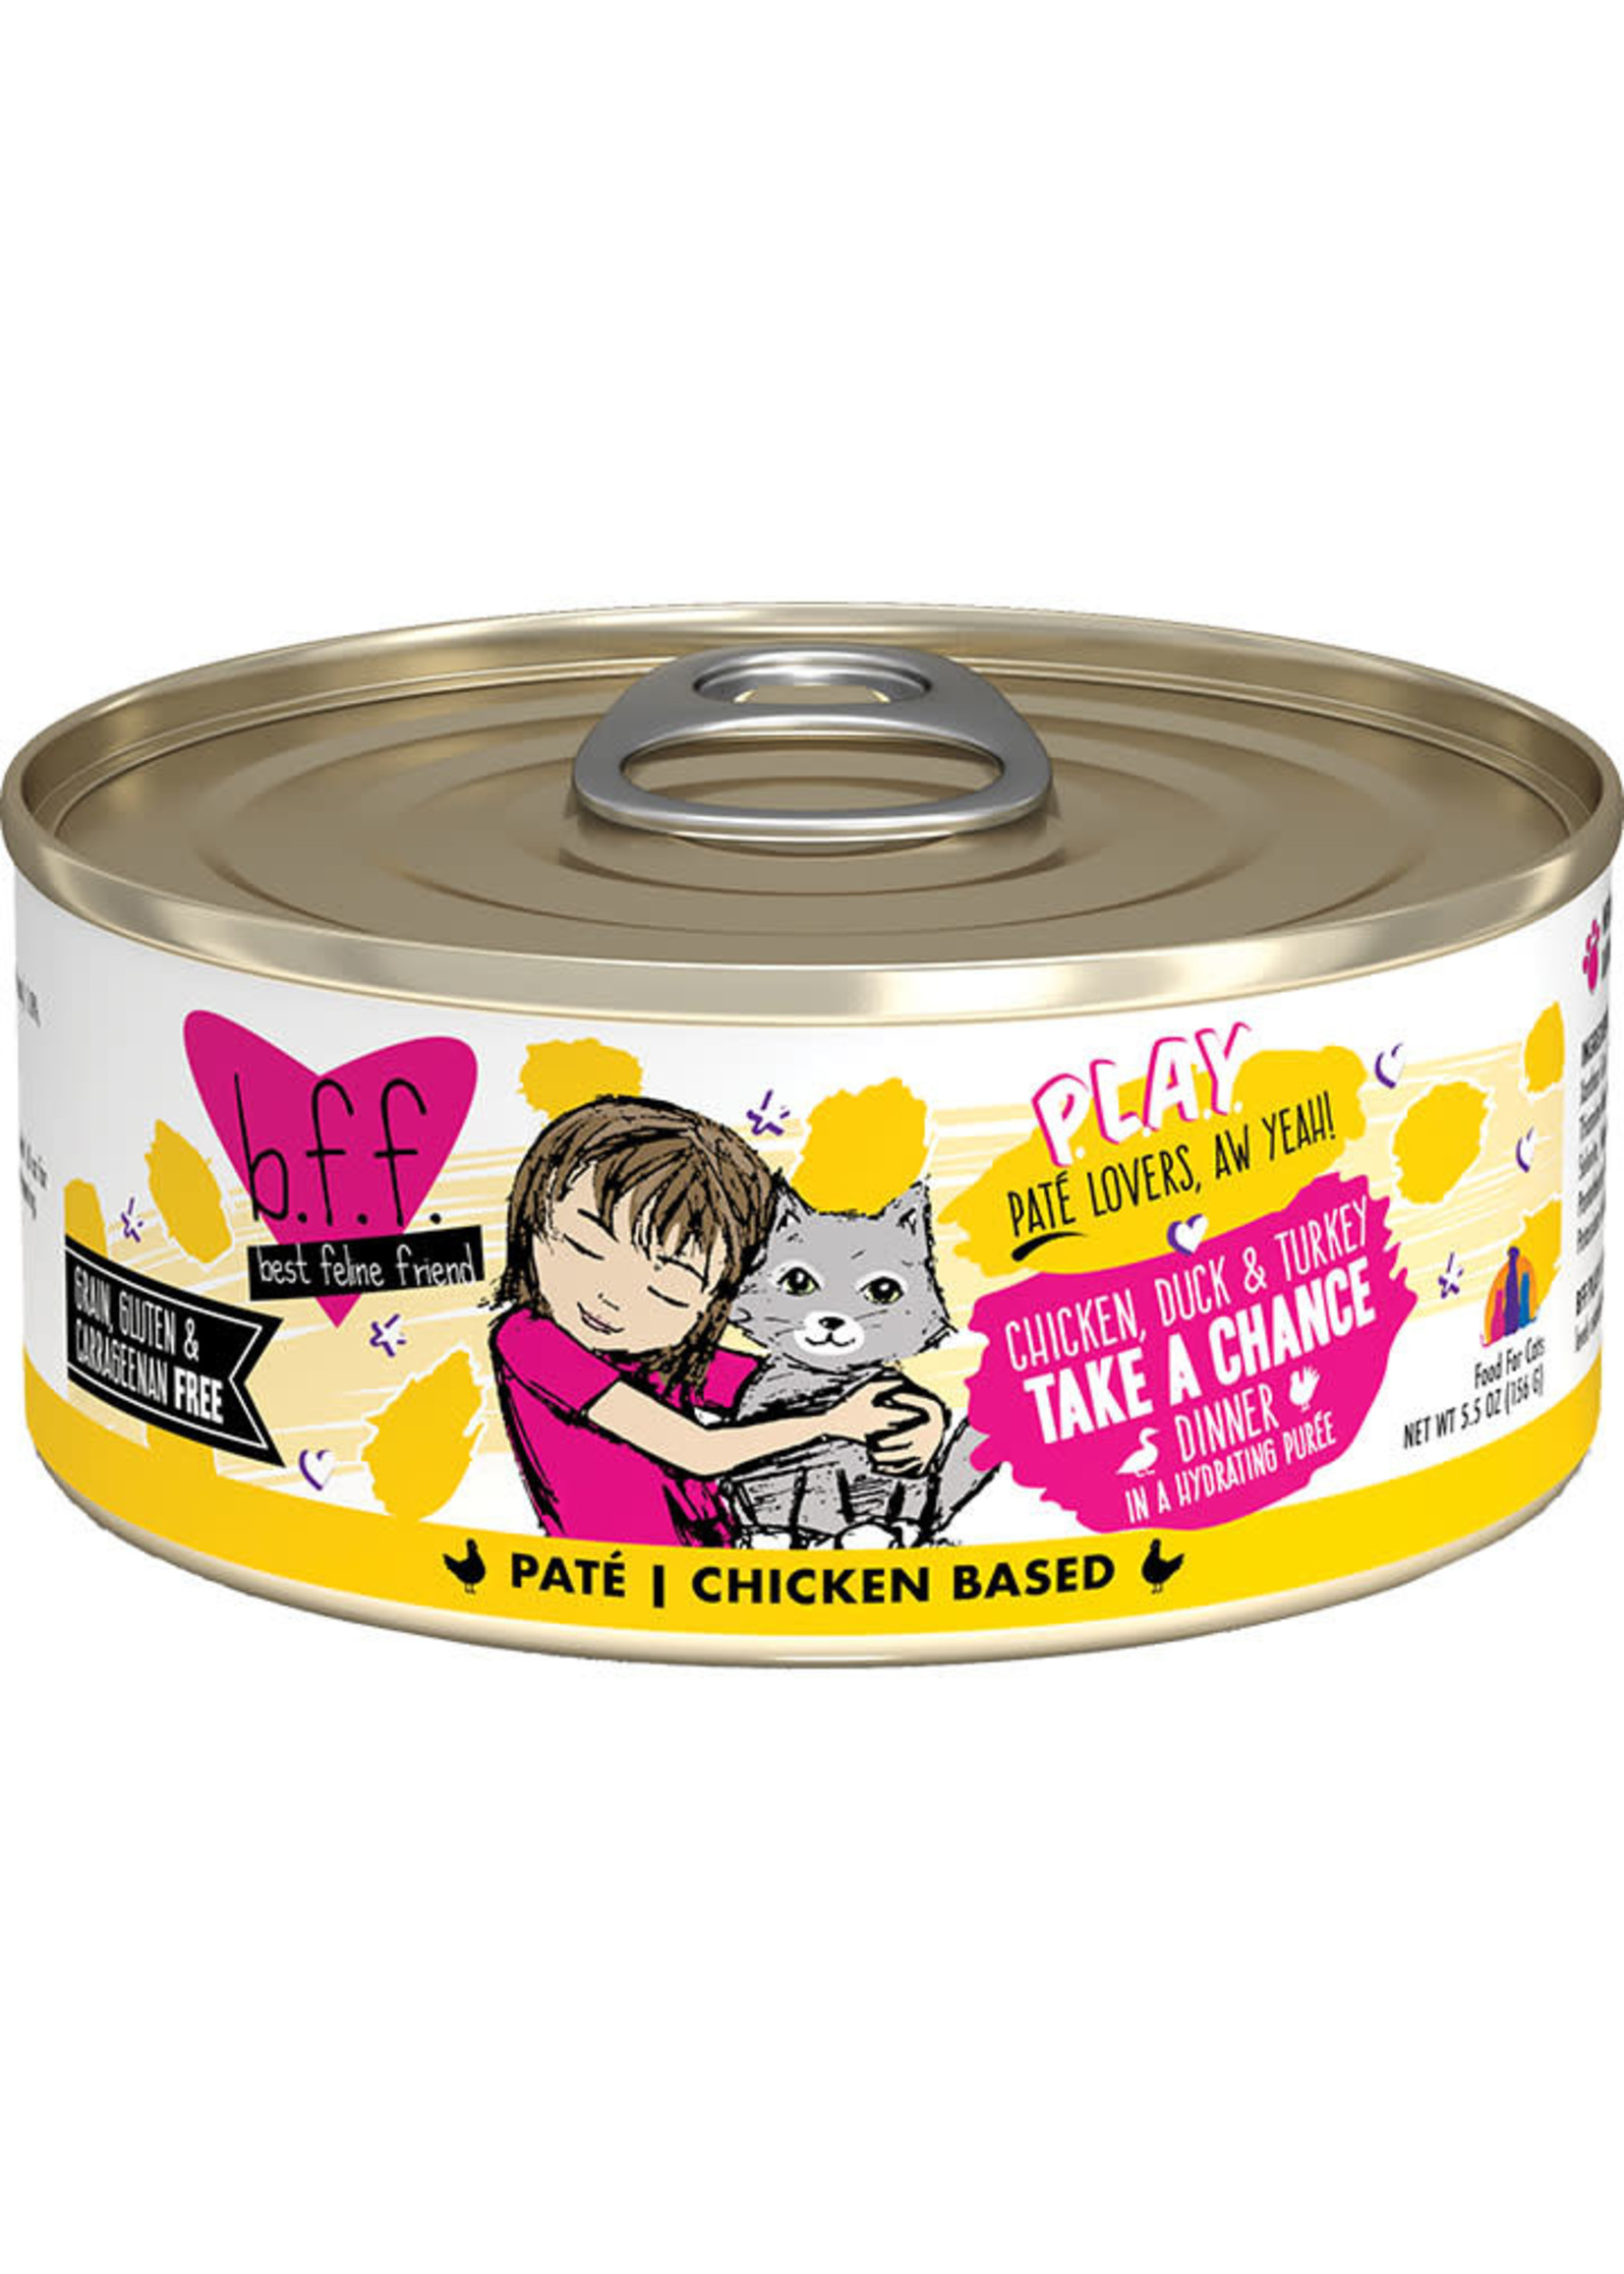 Weruva Weruva BFF - Take A Chance Chicken, Duck & Turkey Pate 5.5oz Can Cat Food